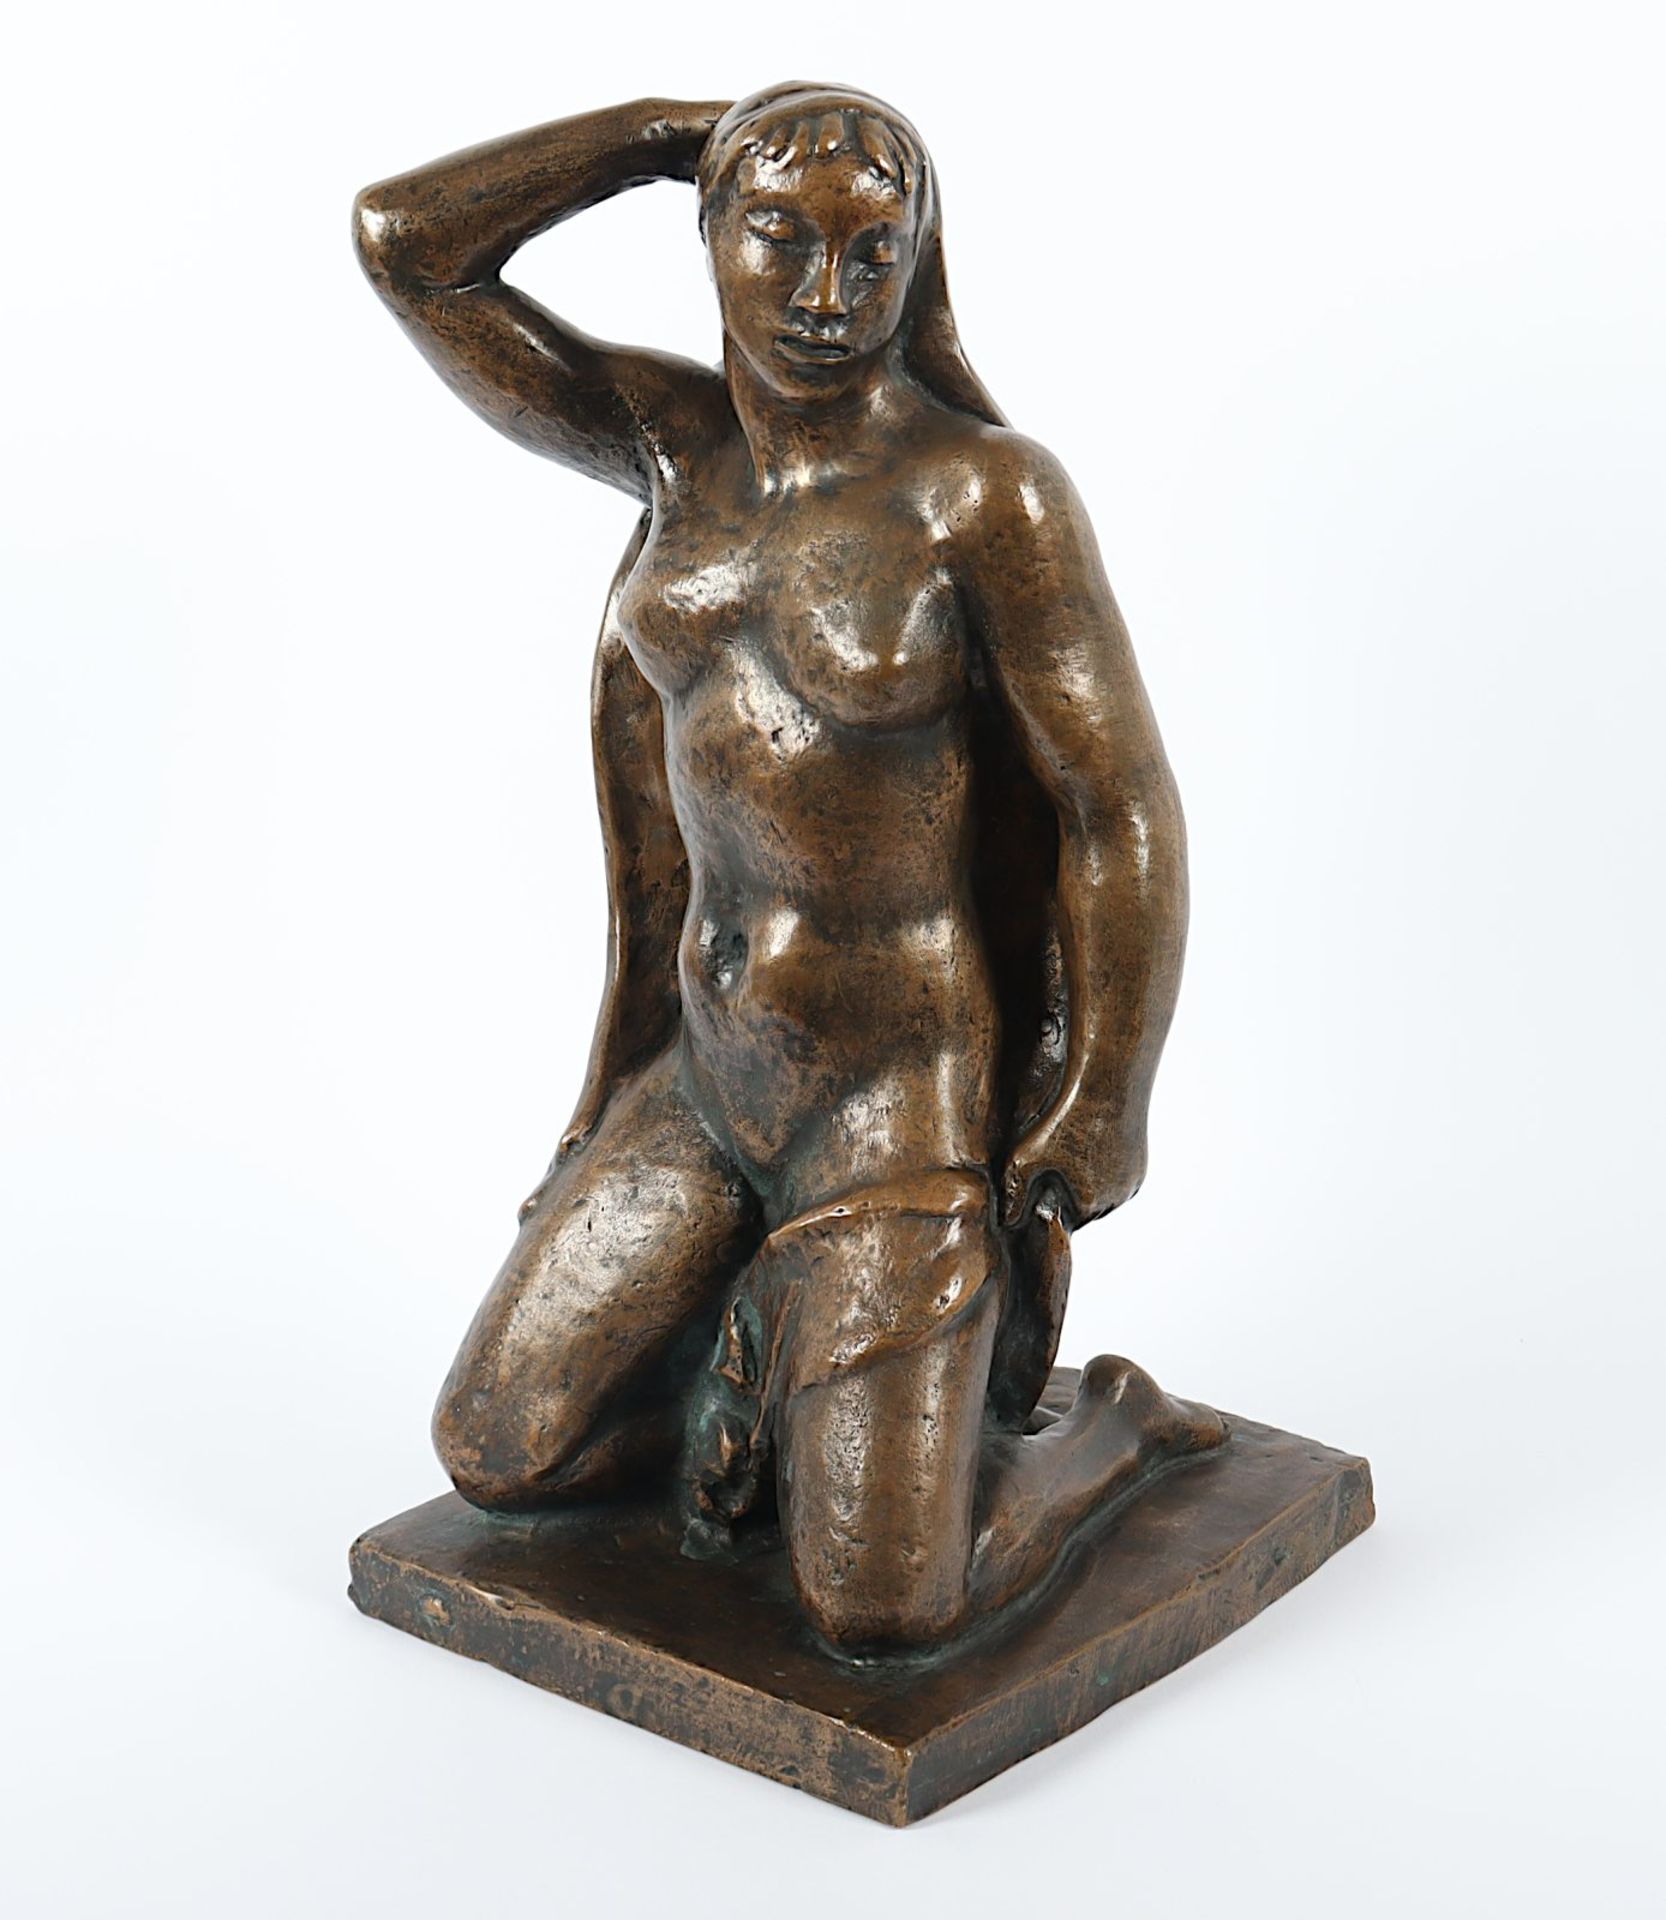 Steger, Milly (1881-1948), "Kleine Knieende", Bronze, um 1934